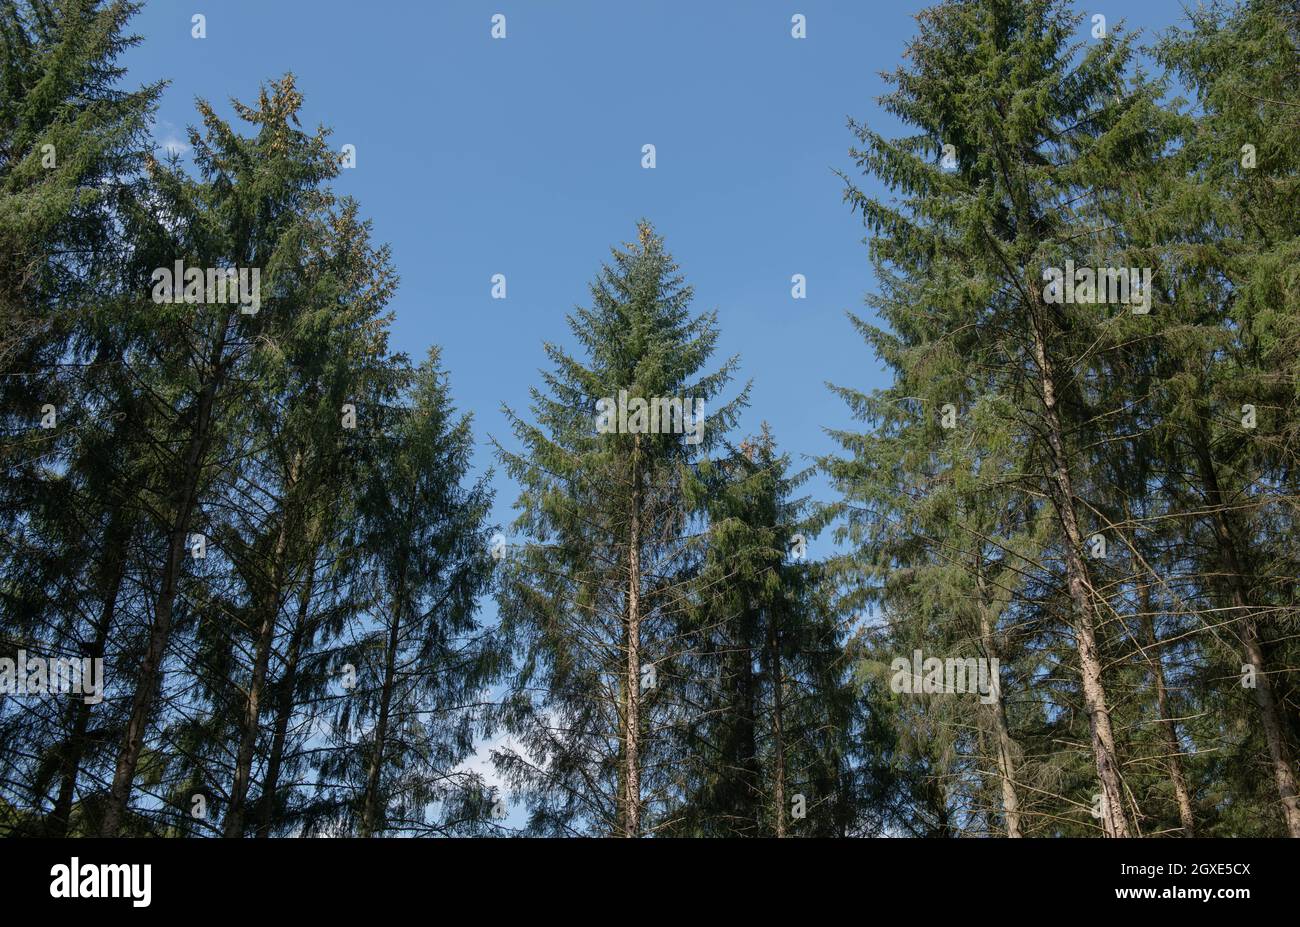 Sommerlaub auf immergrünen Nadelbäumen der Sitka Fichte (Picea sitchensis), die in einem Waldwald mit einem hellen Hintergrund des blauen Himmels in Devon wachsen Stockfoto